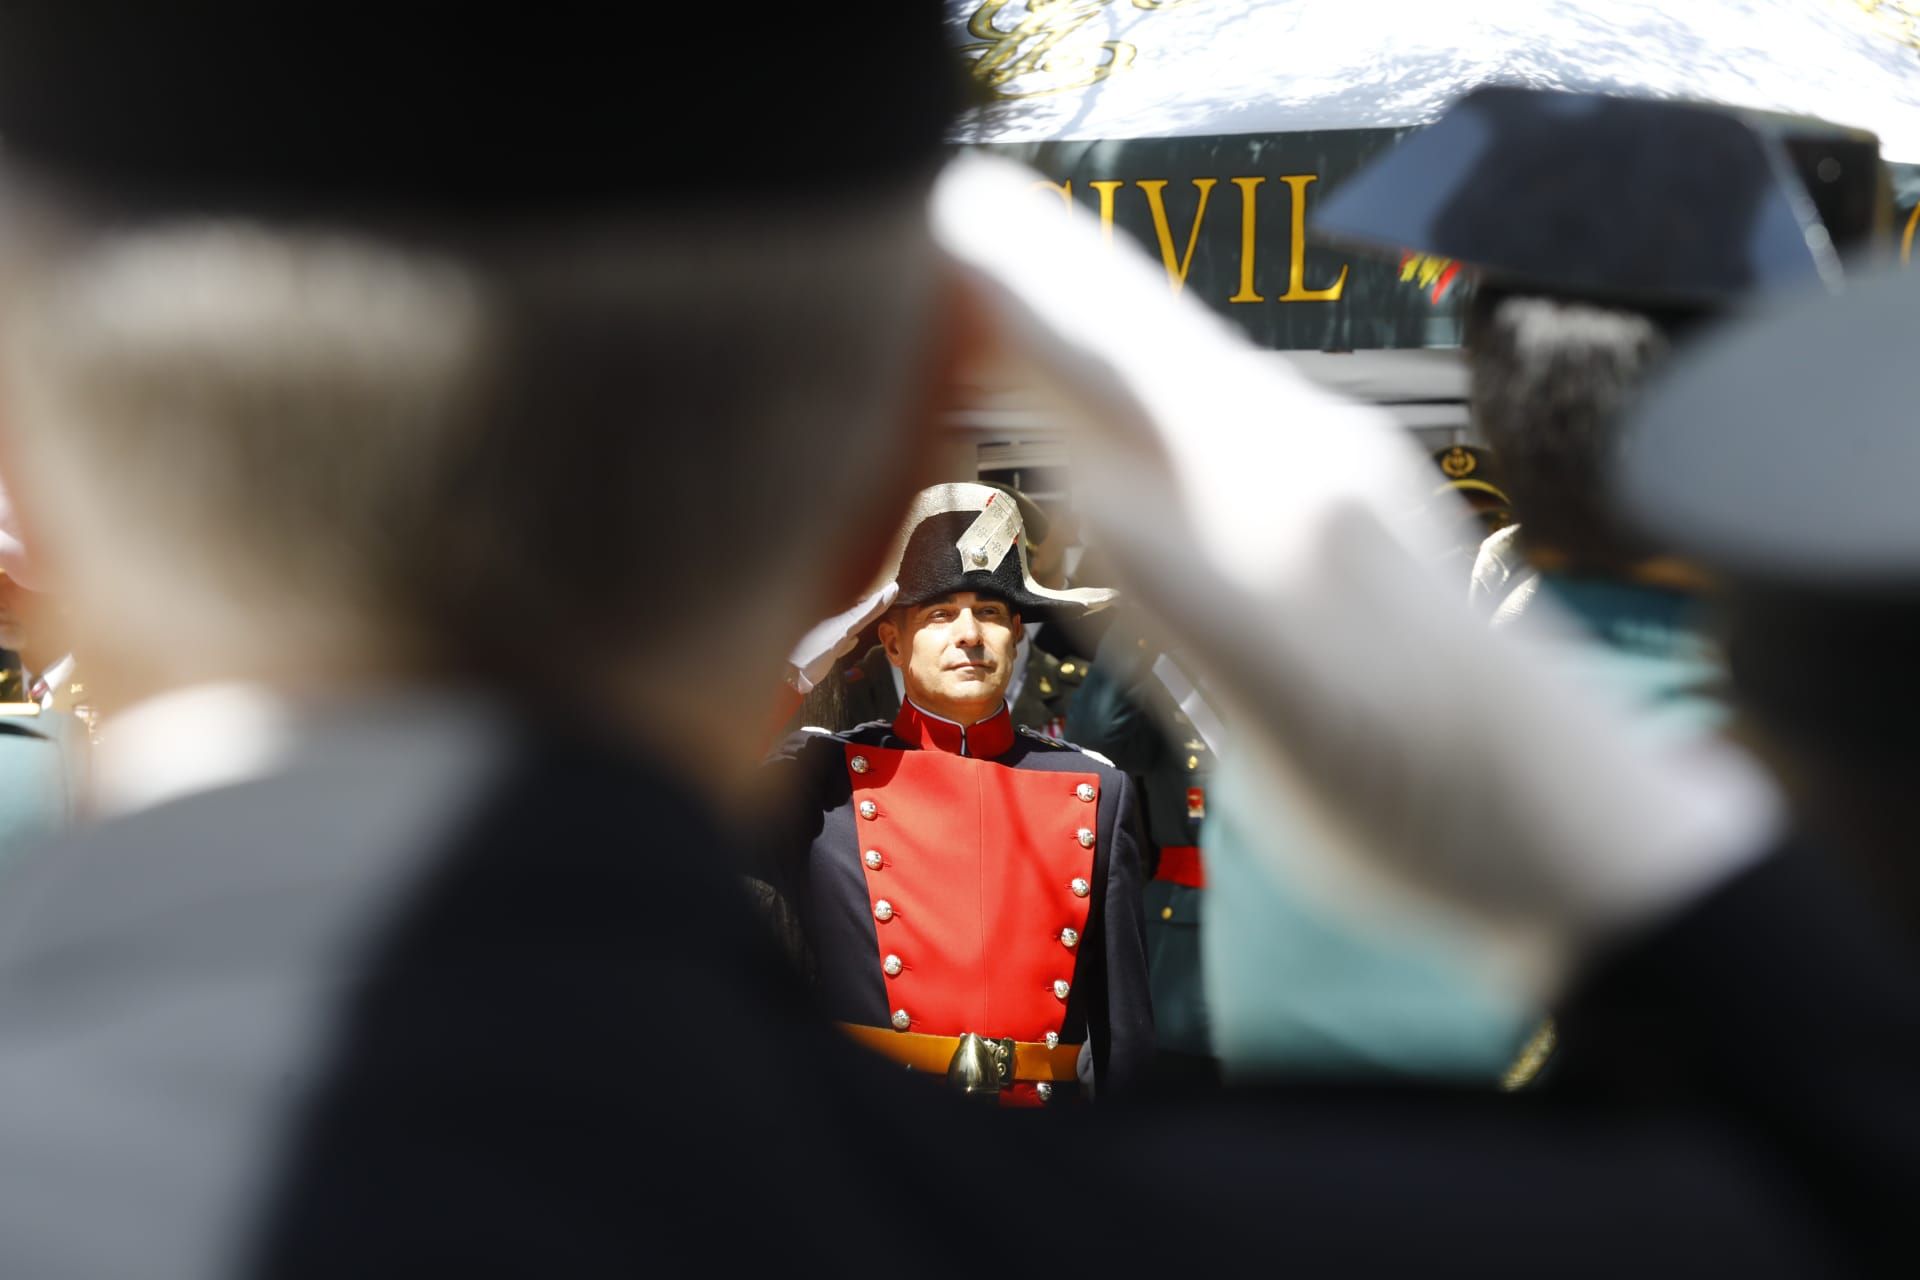 En imágenes | La Guardia Civil celebra sus 179 años con un homenaje a sus fallecidos